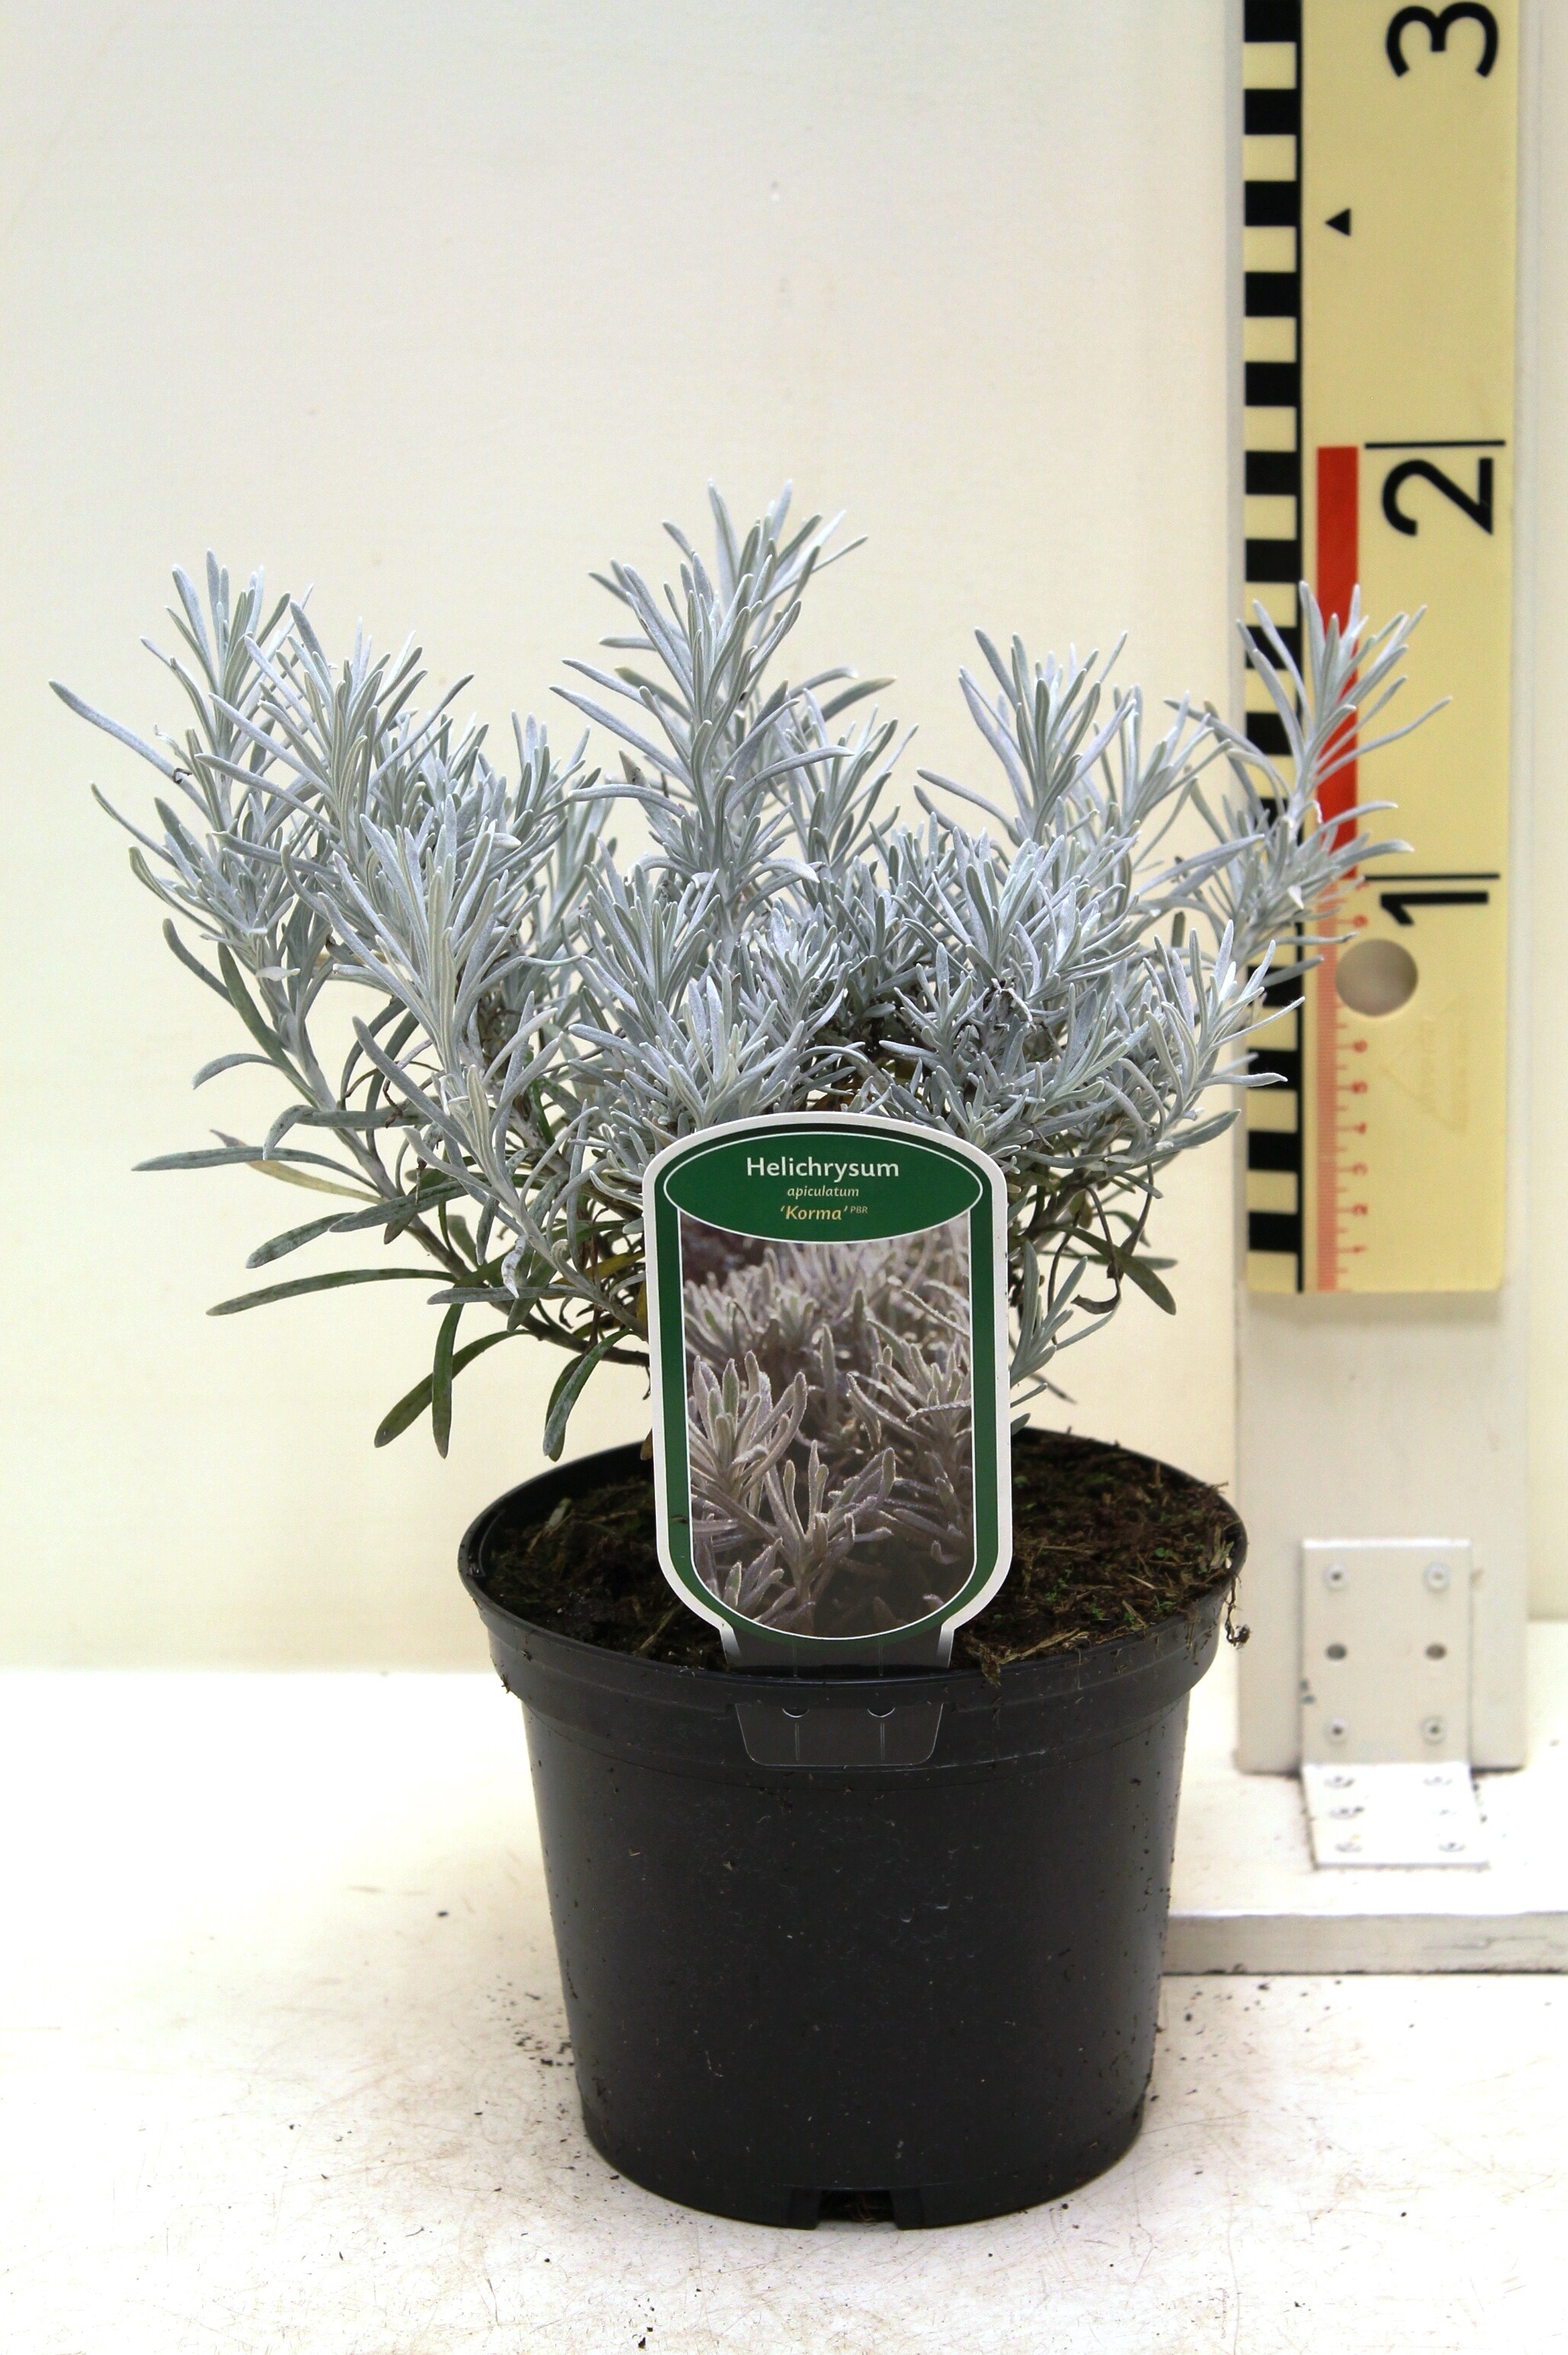 Helichrysum apiculatum 'Korma' c2